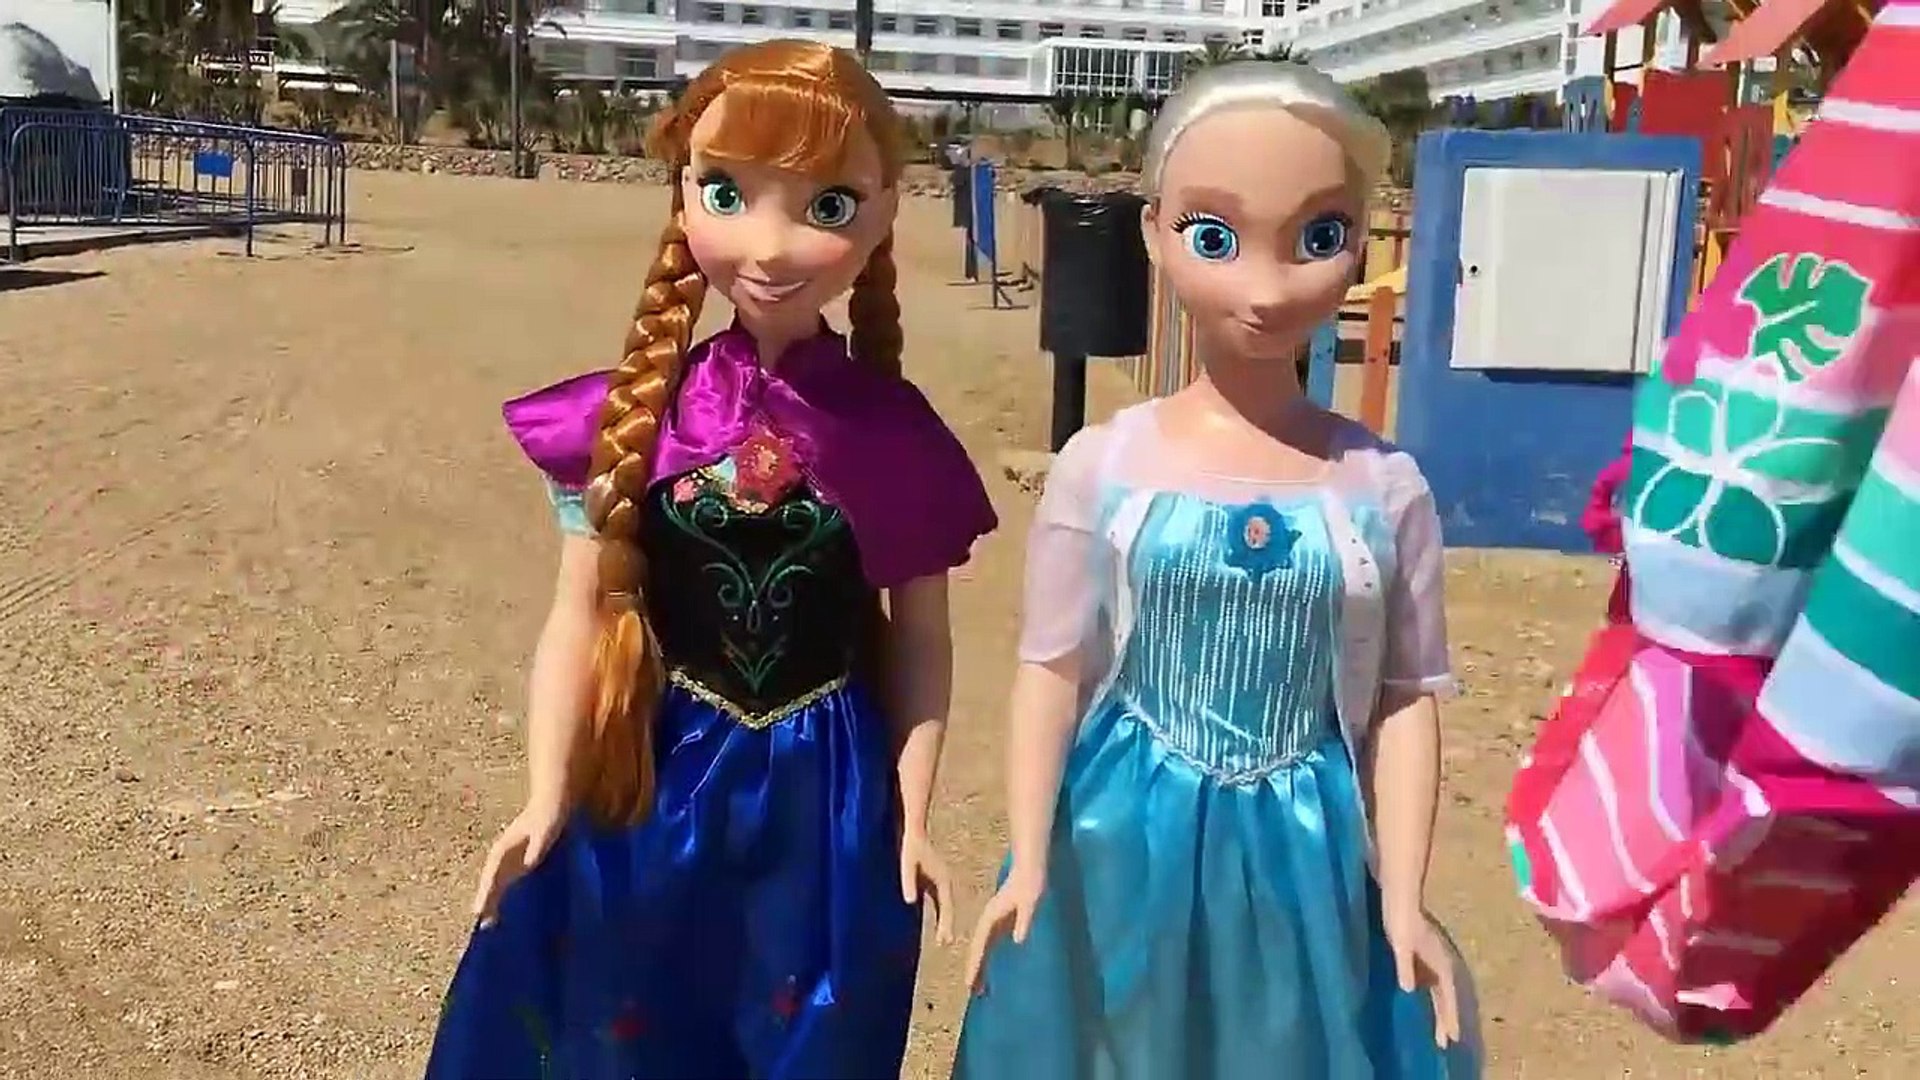 Elsa y Anna muñecas grandes juegan en el parque infantil de la playa /  Historias de juguetes - video Dailymotion